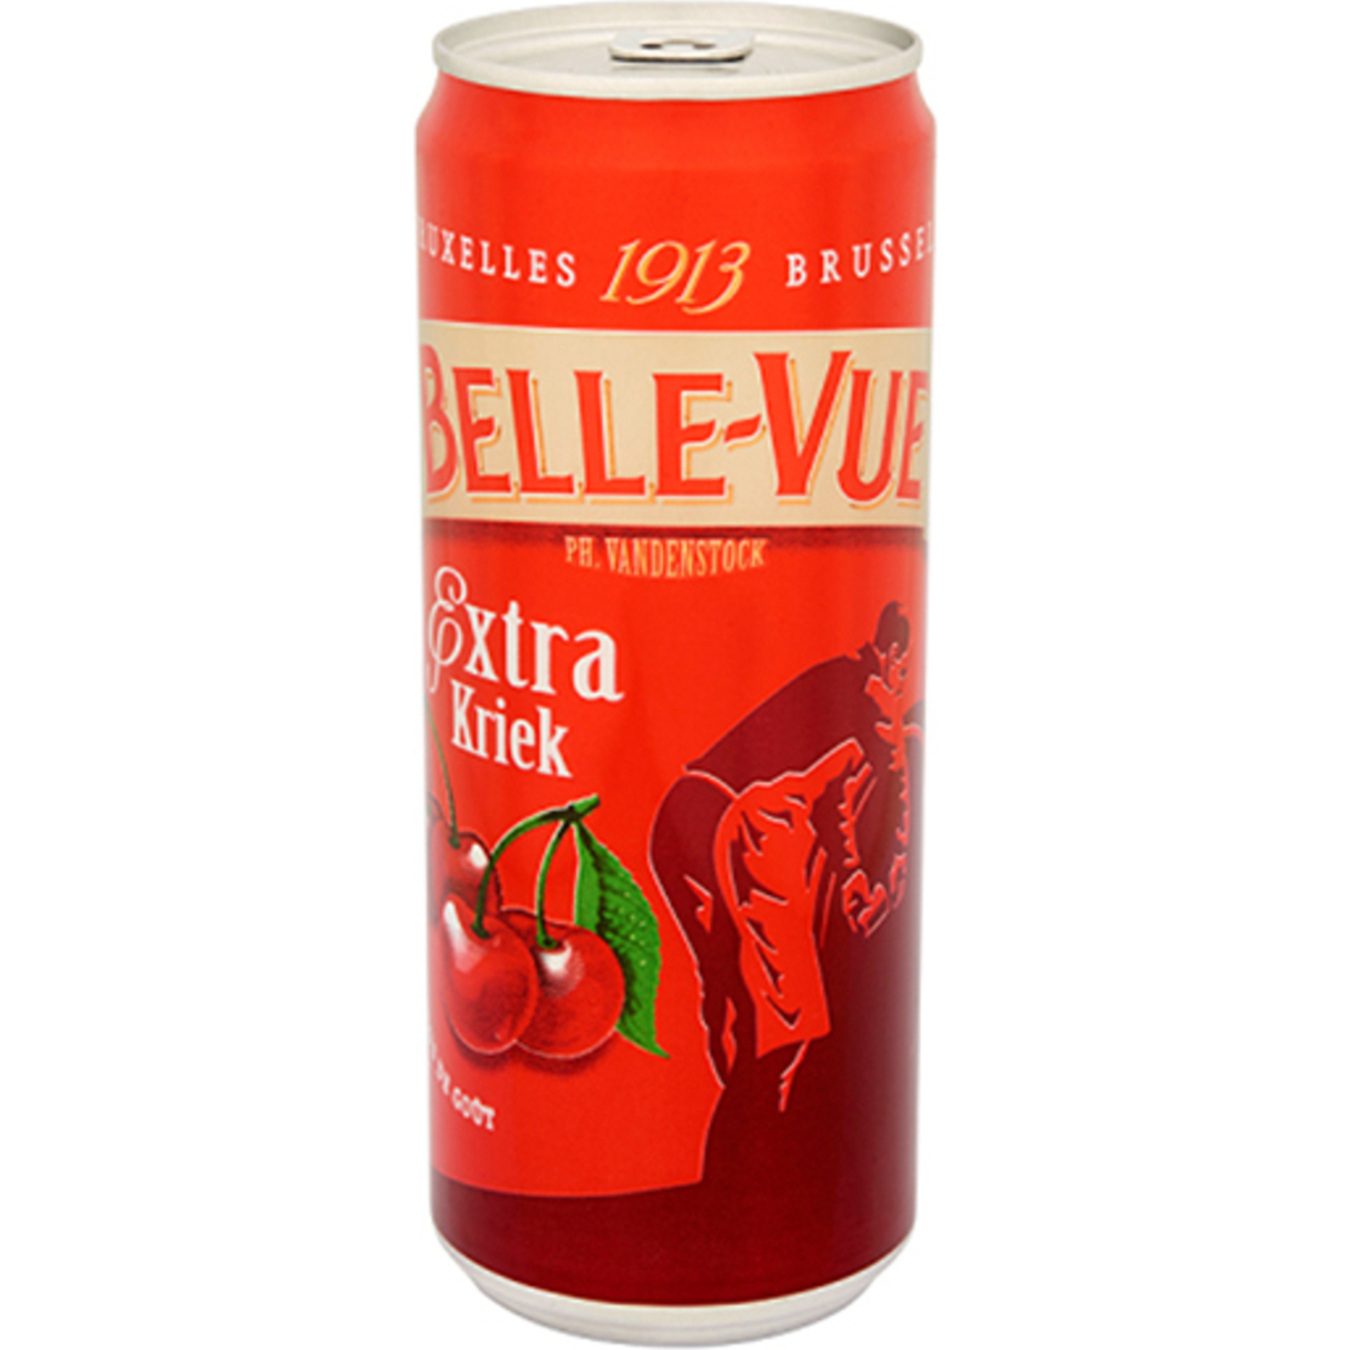 Пиво Belle-Vue Extra Kriek полутемное специальное 4,1% 0,33л ж/б